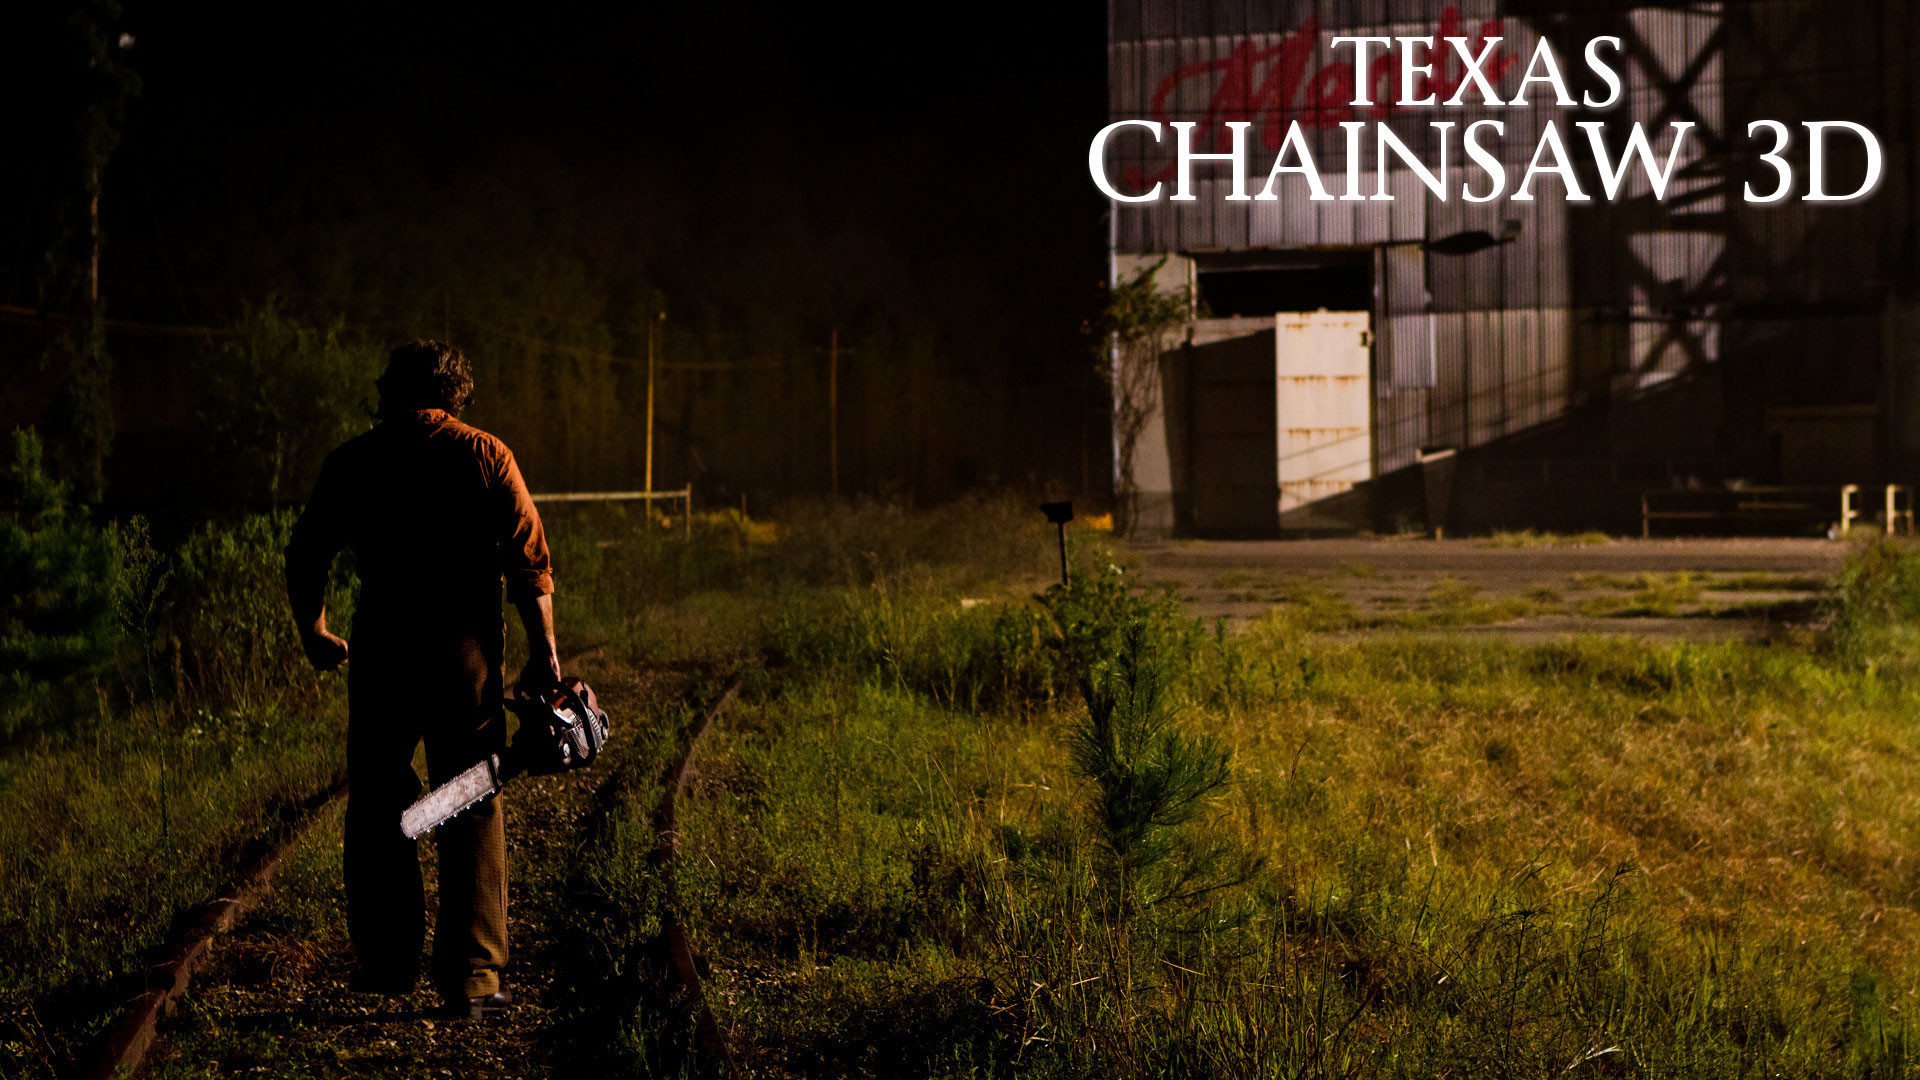 Texas Chainsaw Massacre 3D Wallpaper 2 by edheadkt